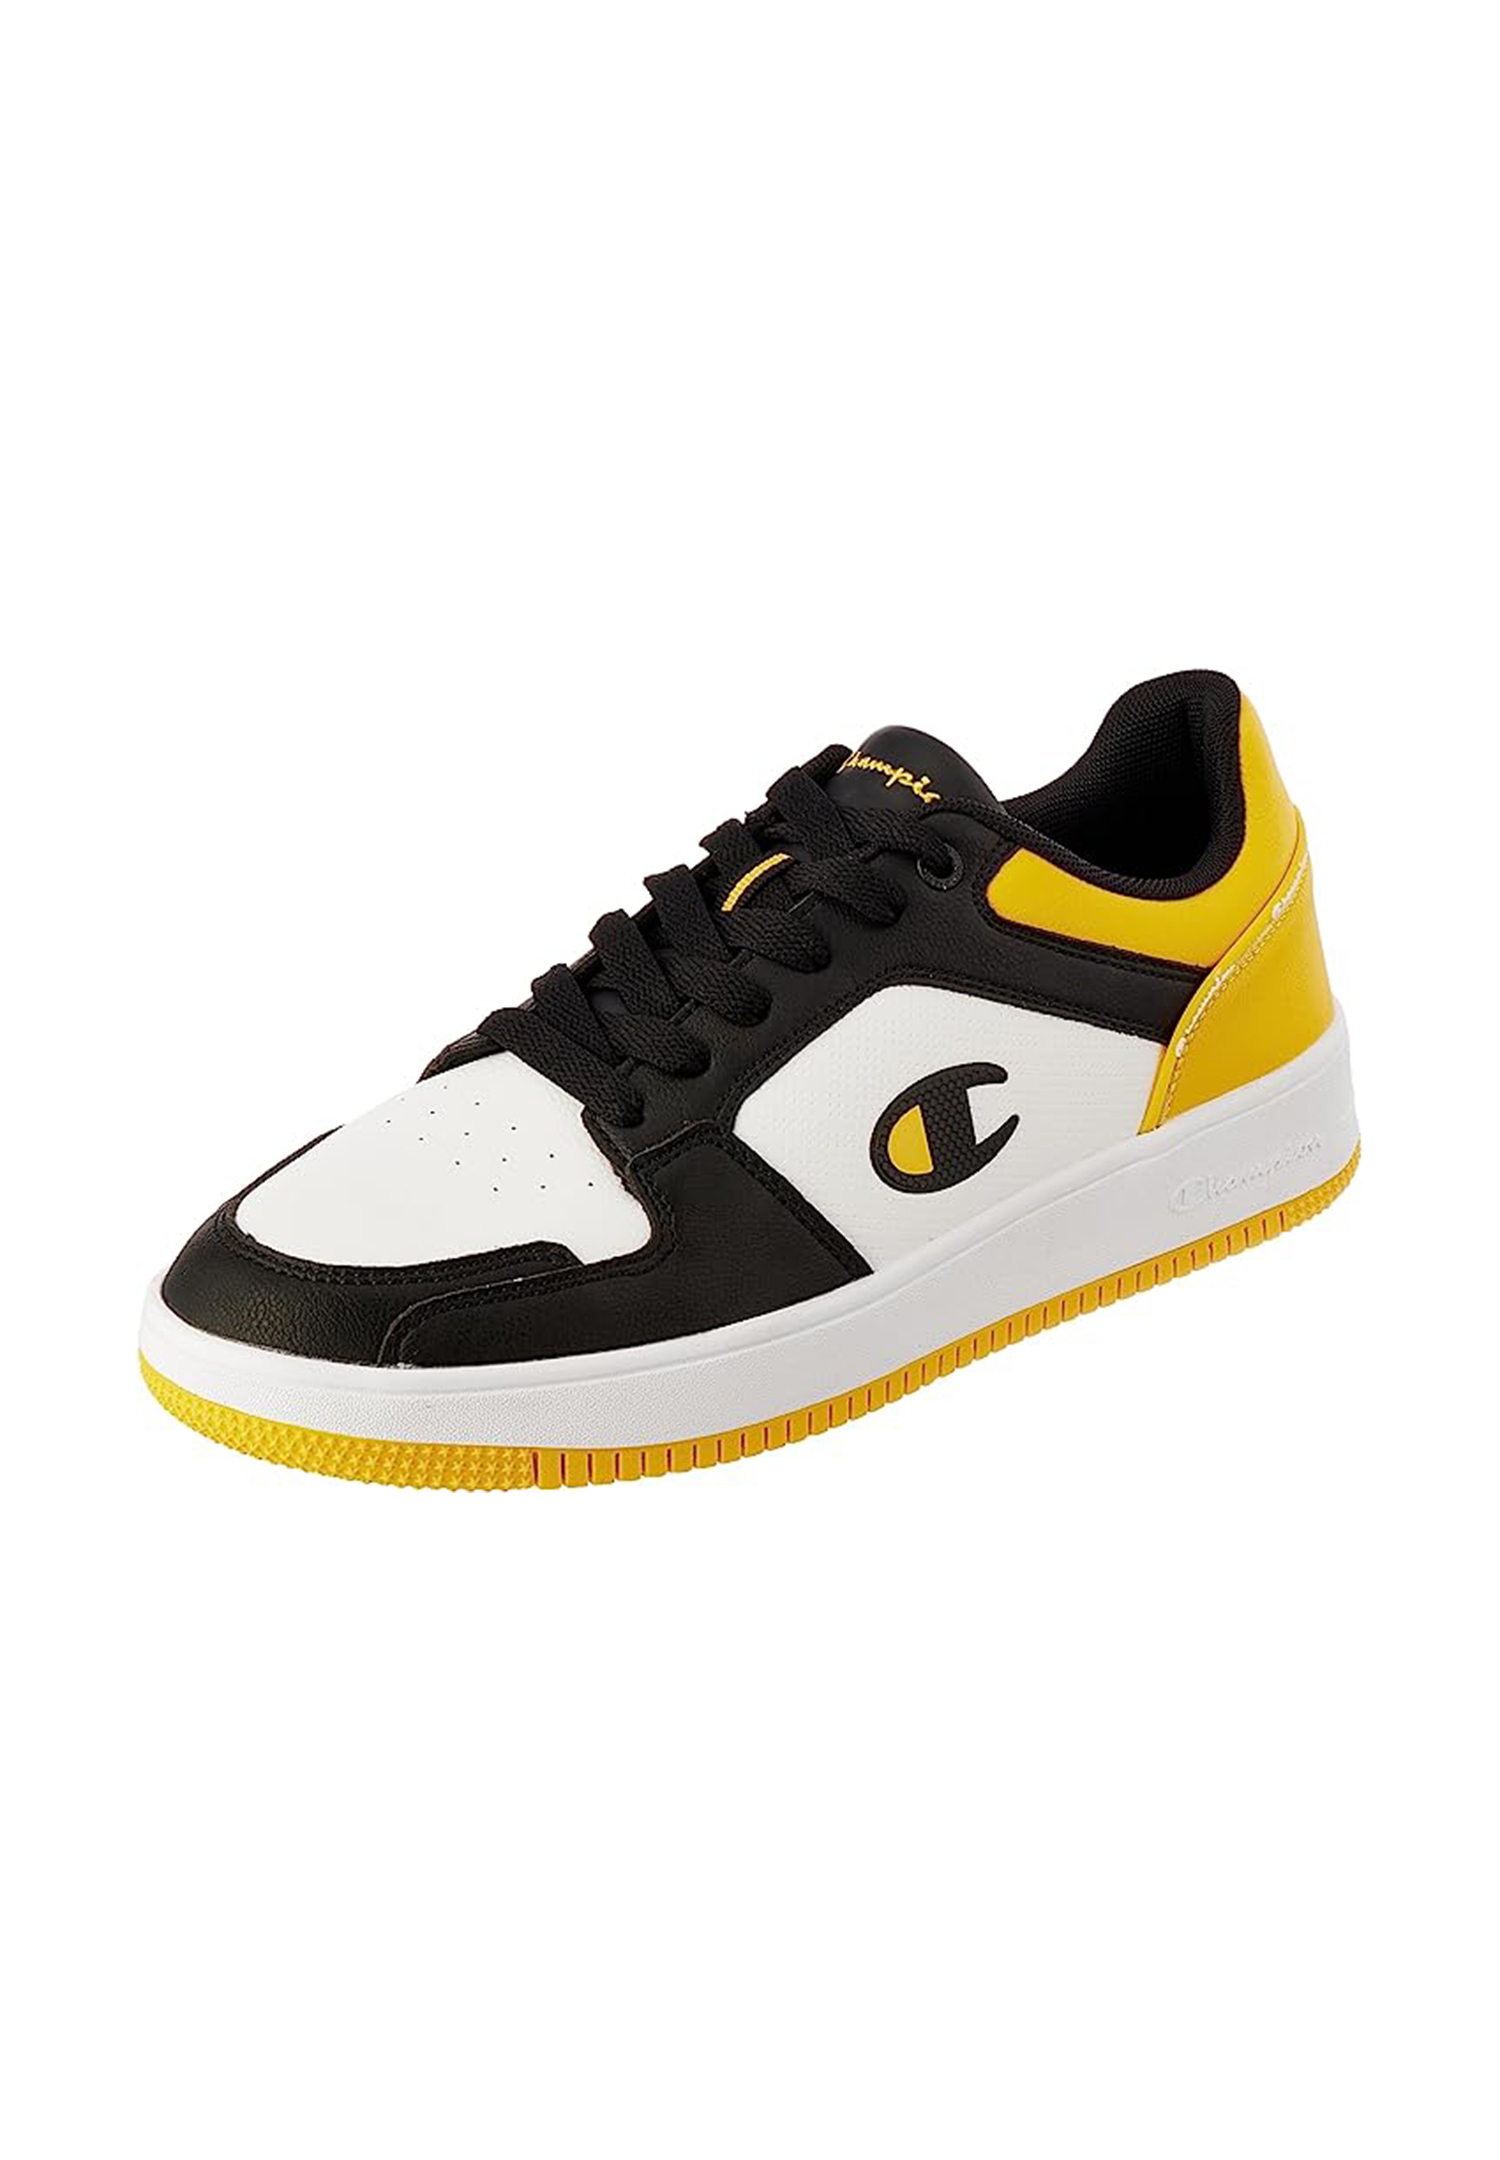 Champion REBOUND 2.0 LOW Herren Sneaker S21906-CHA-WW013 weiß/schwarz/gelb